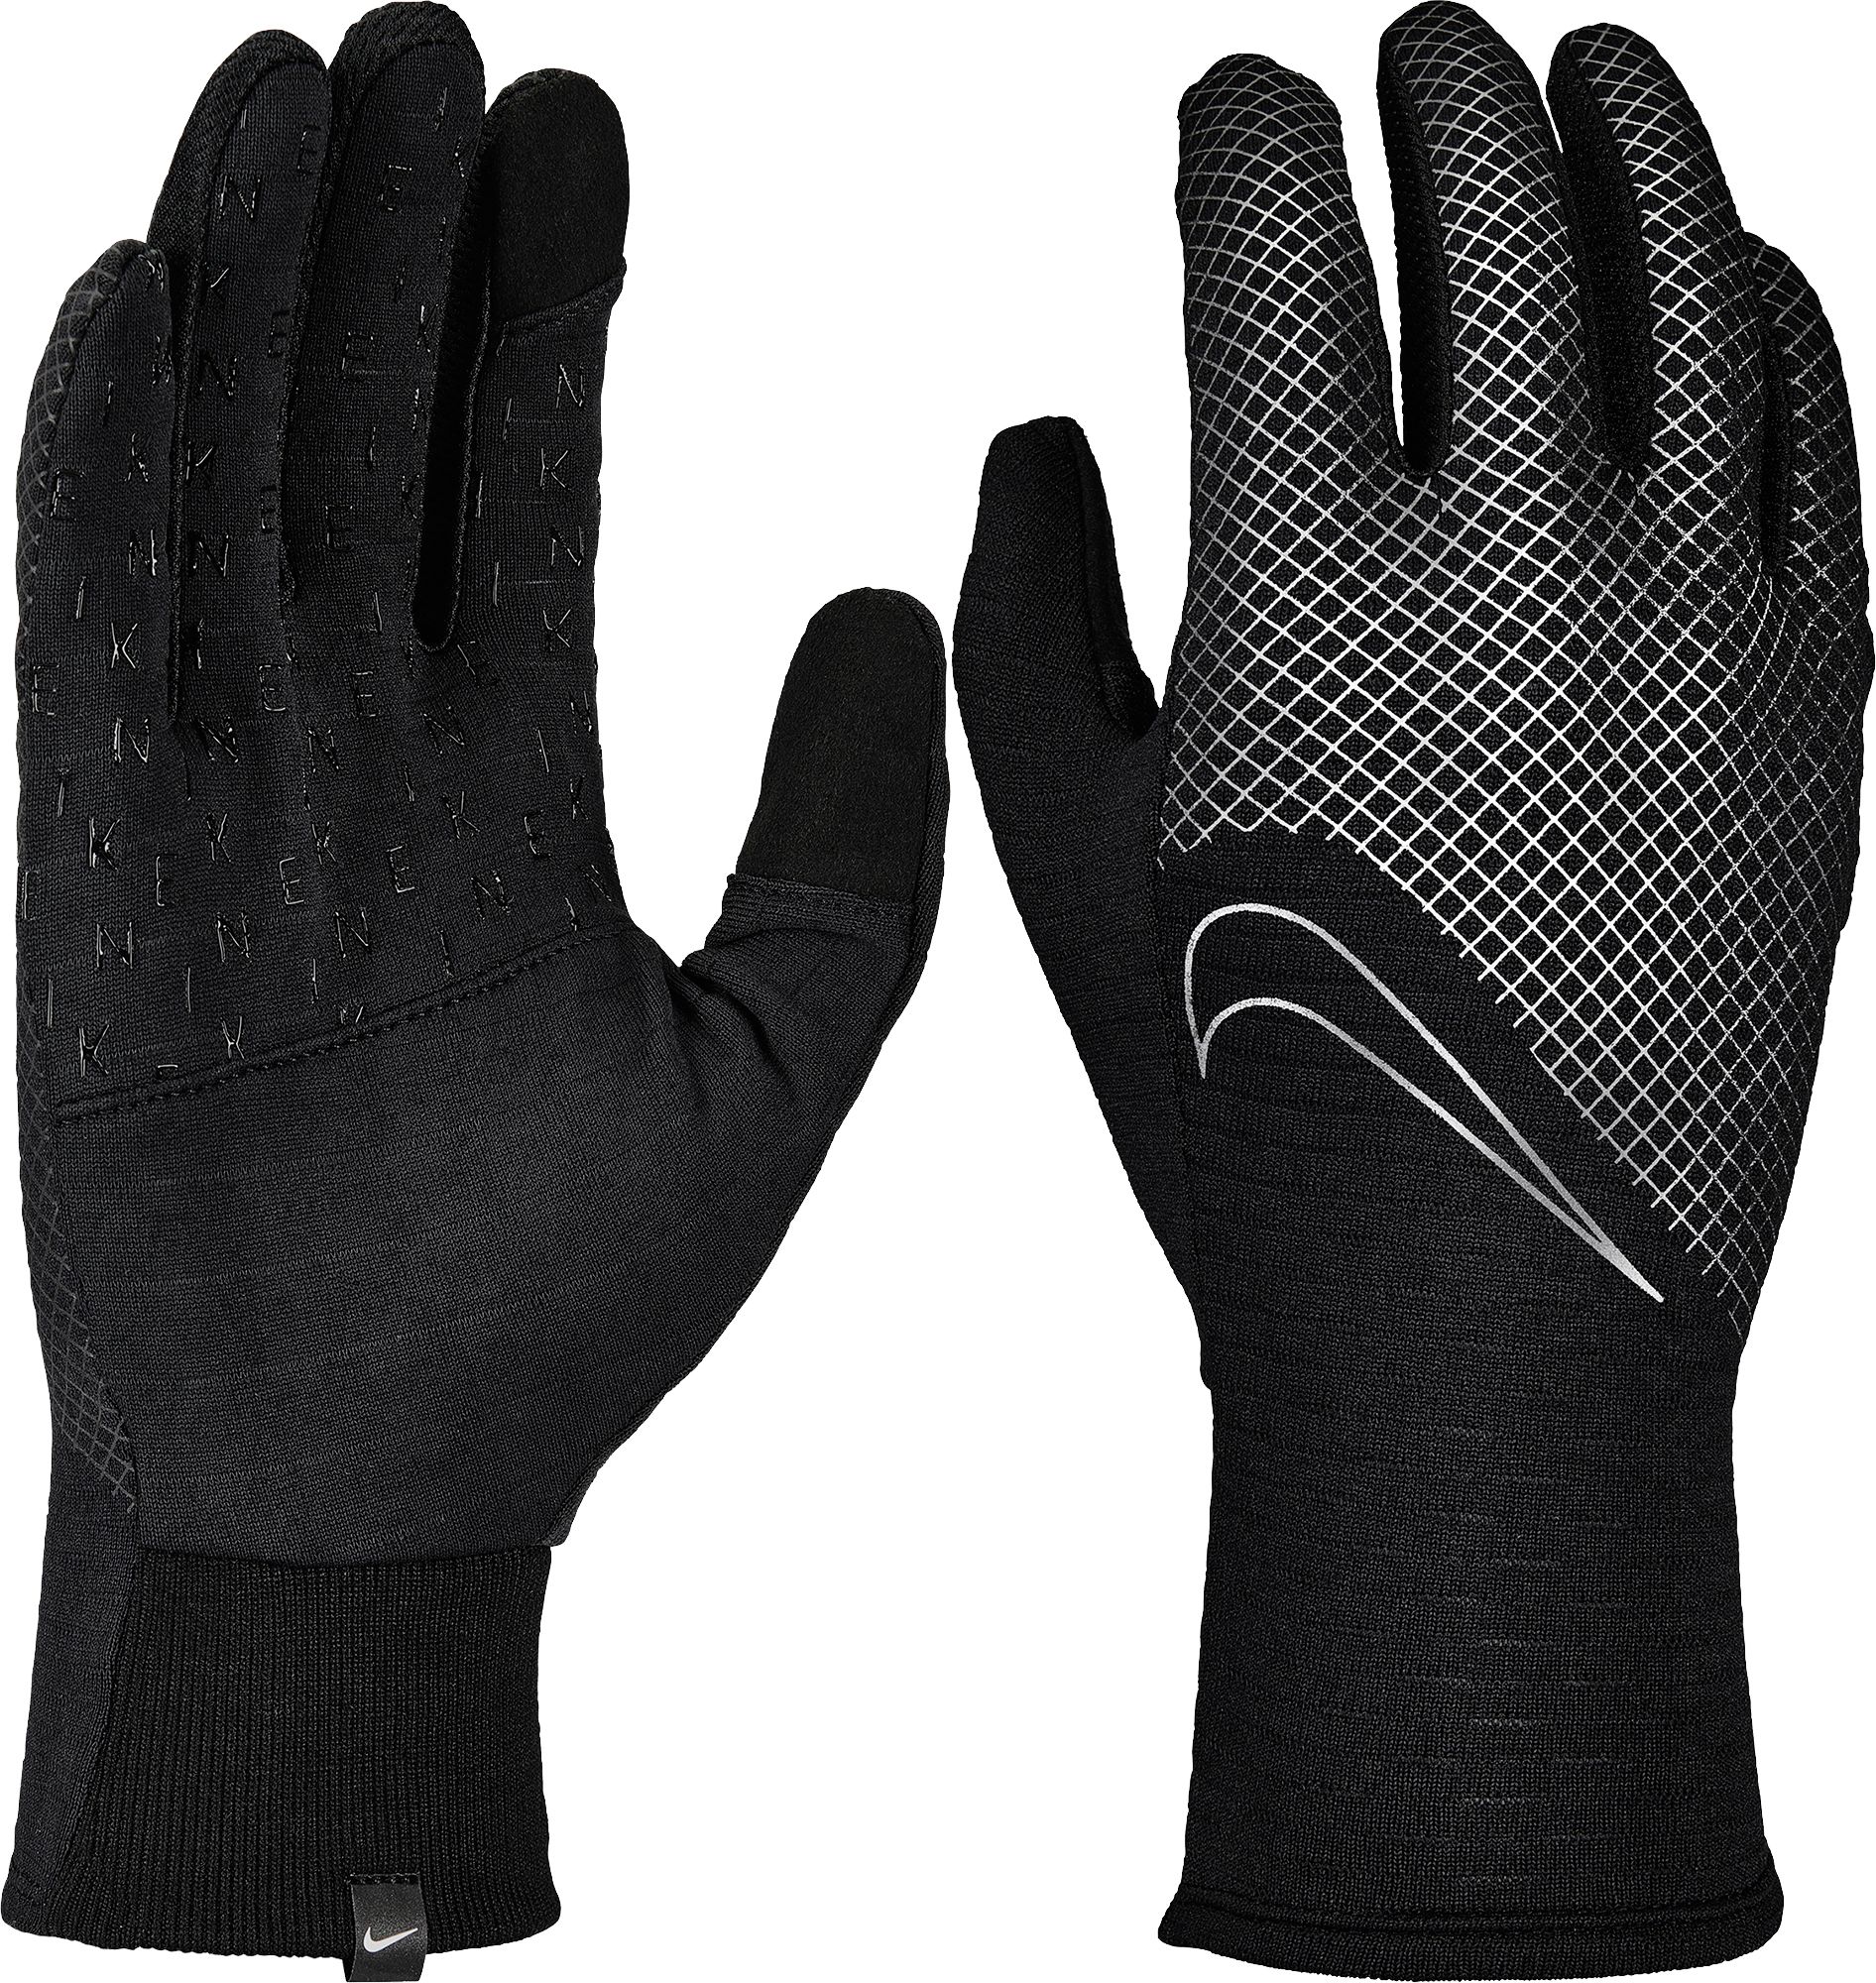 nike gloves winter